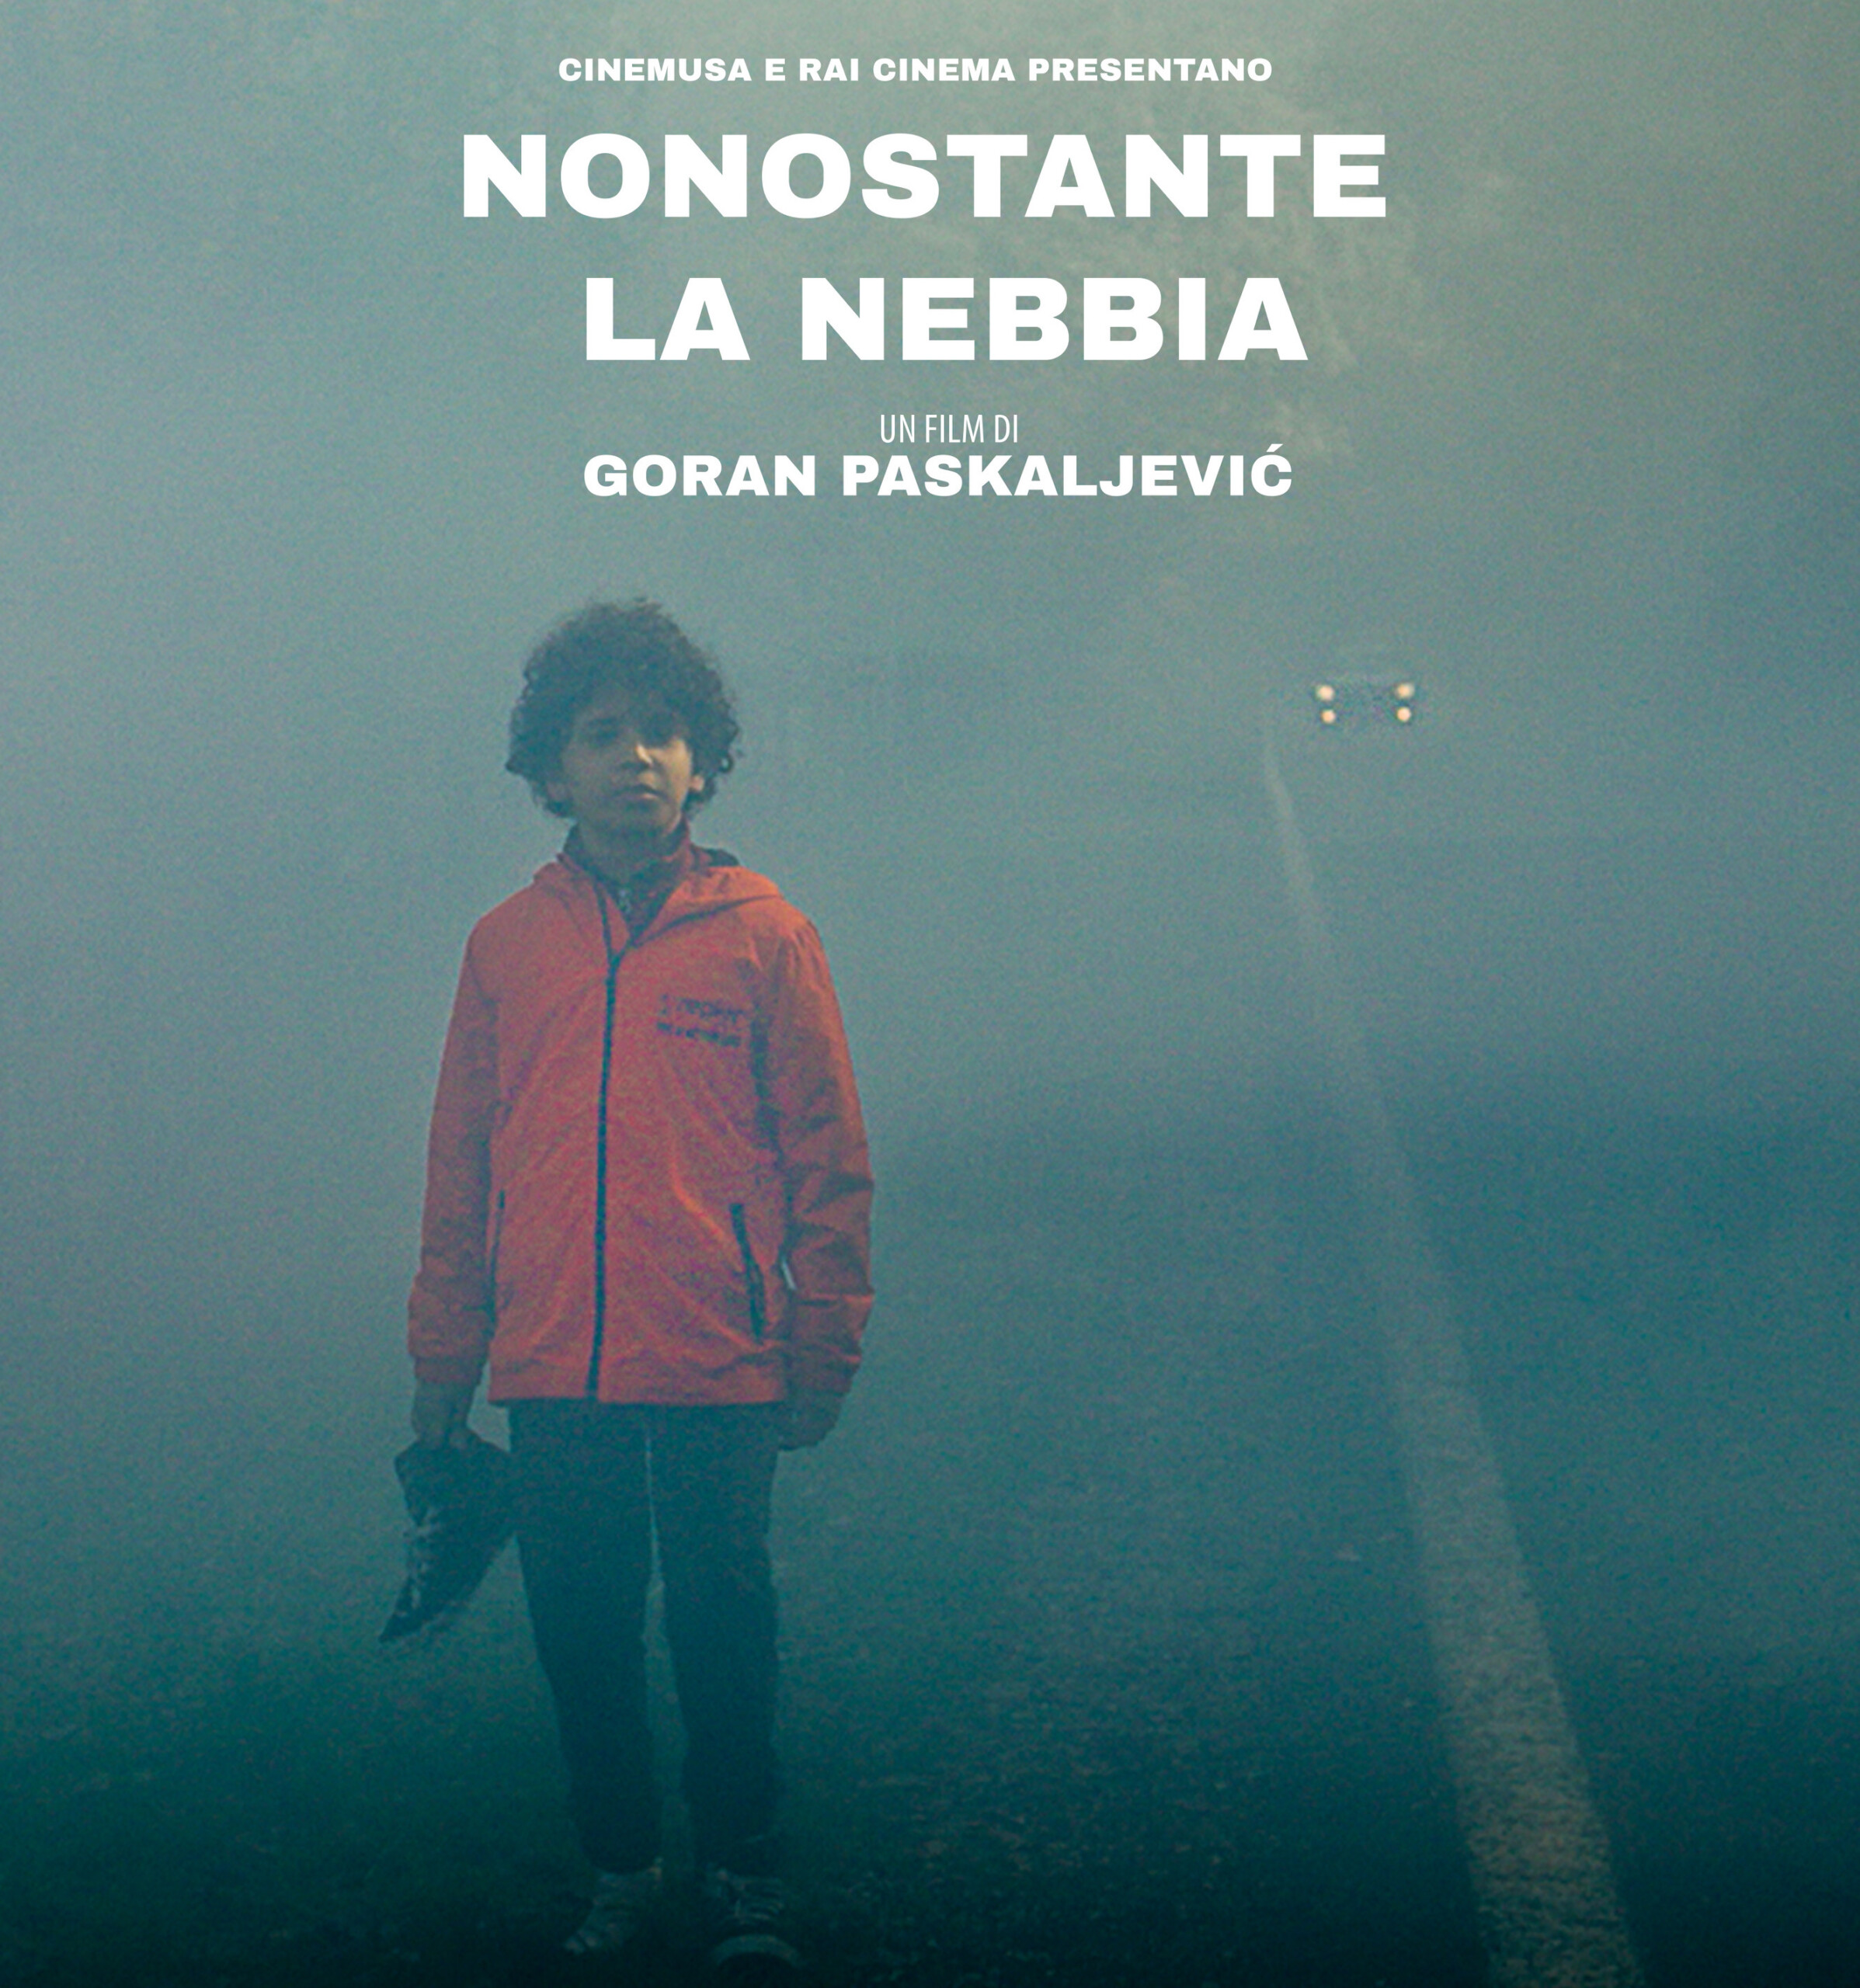 Proiezione del film “Nonostante la nebbia” di Goran Paskalijevic